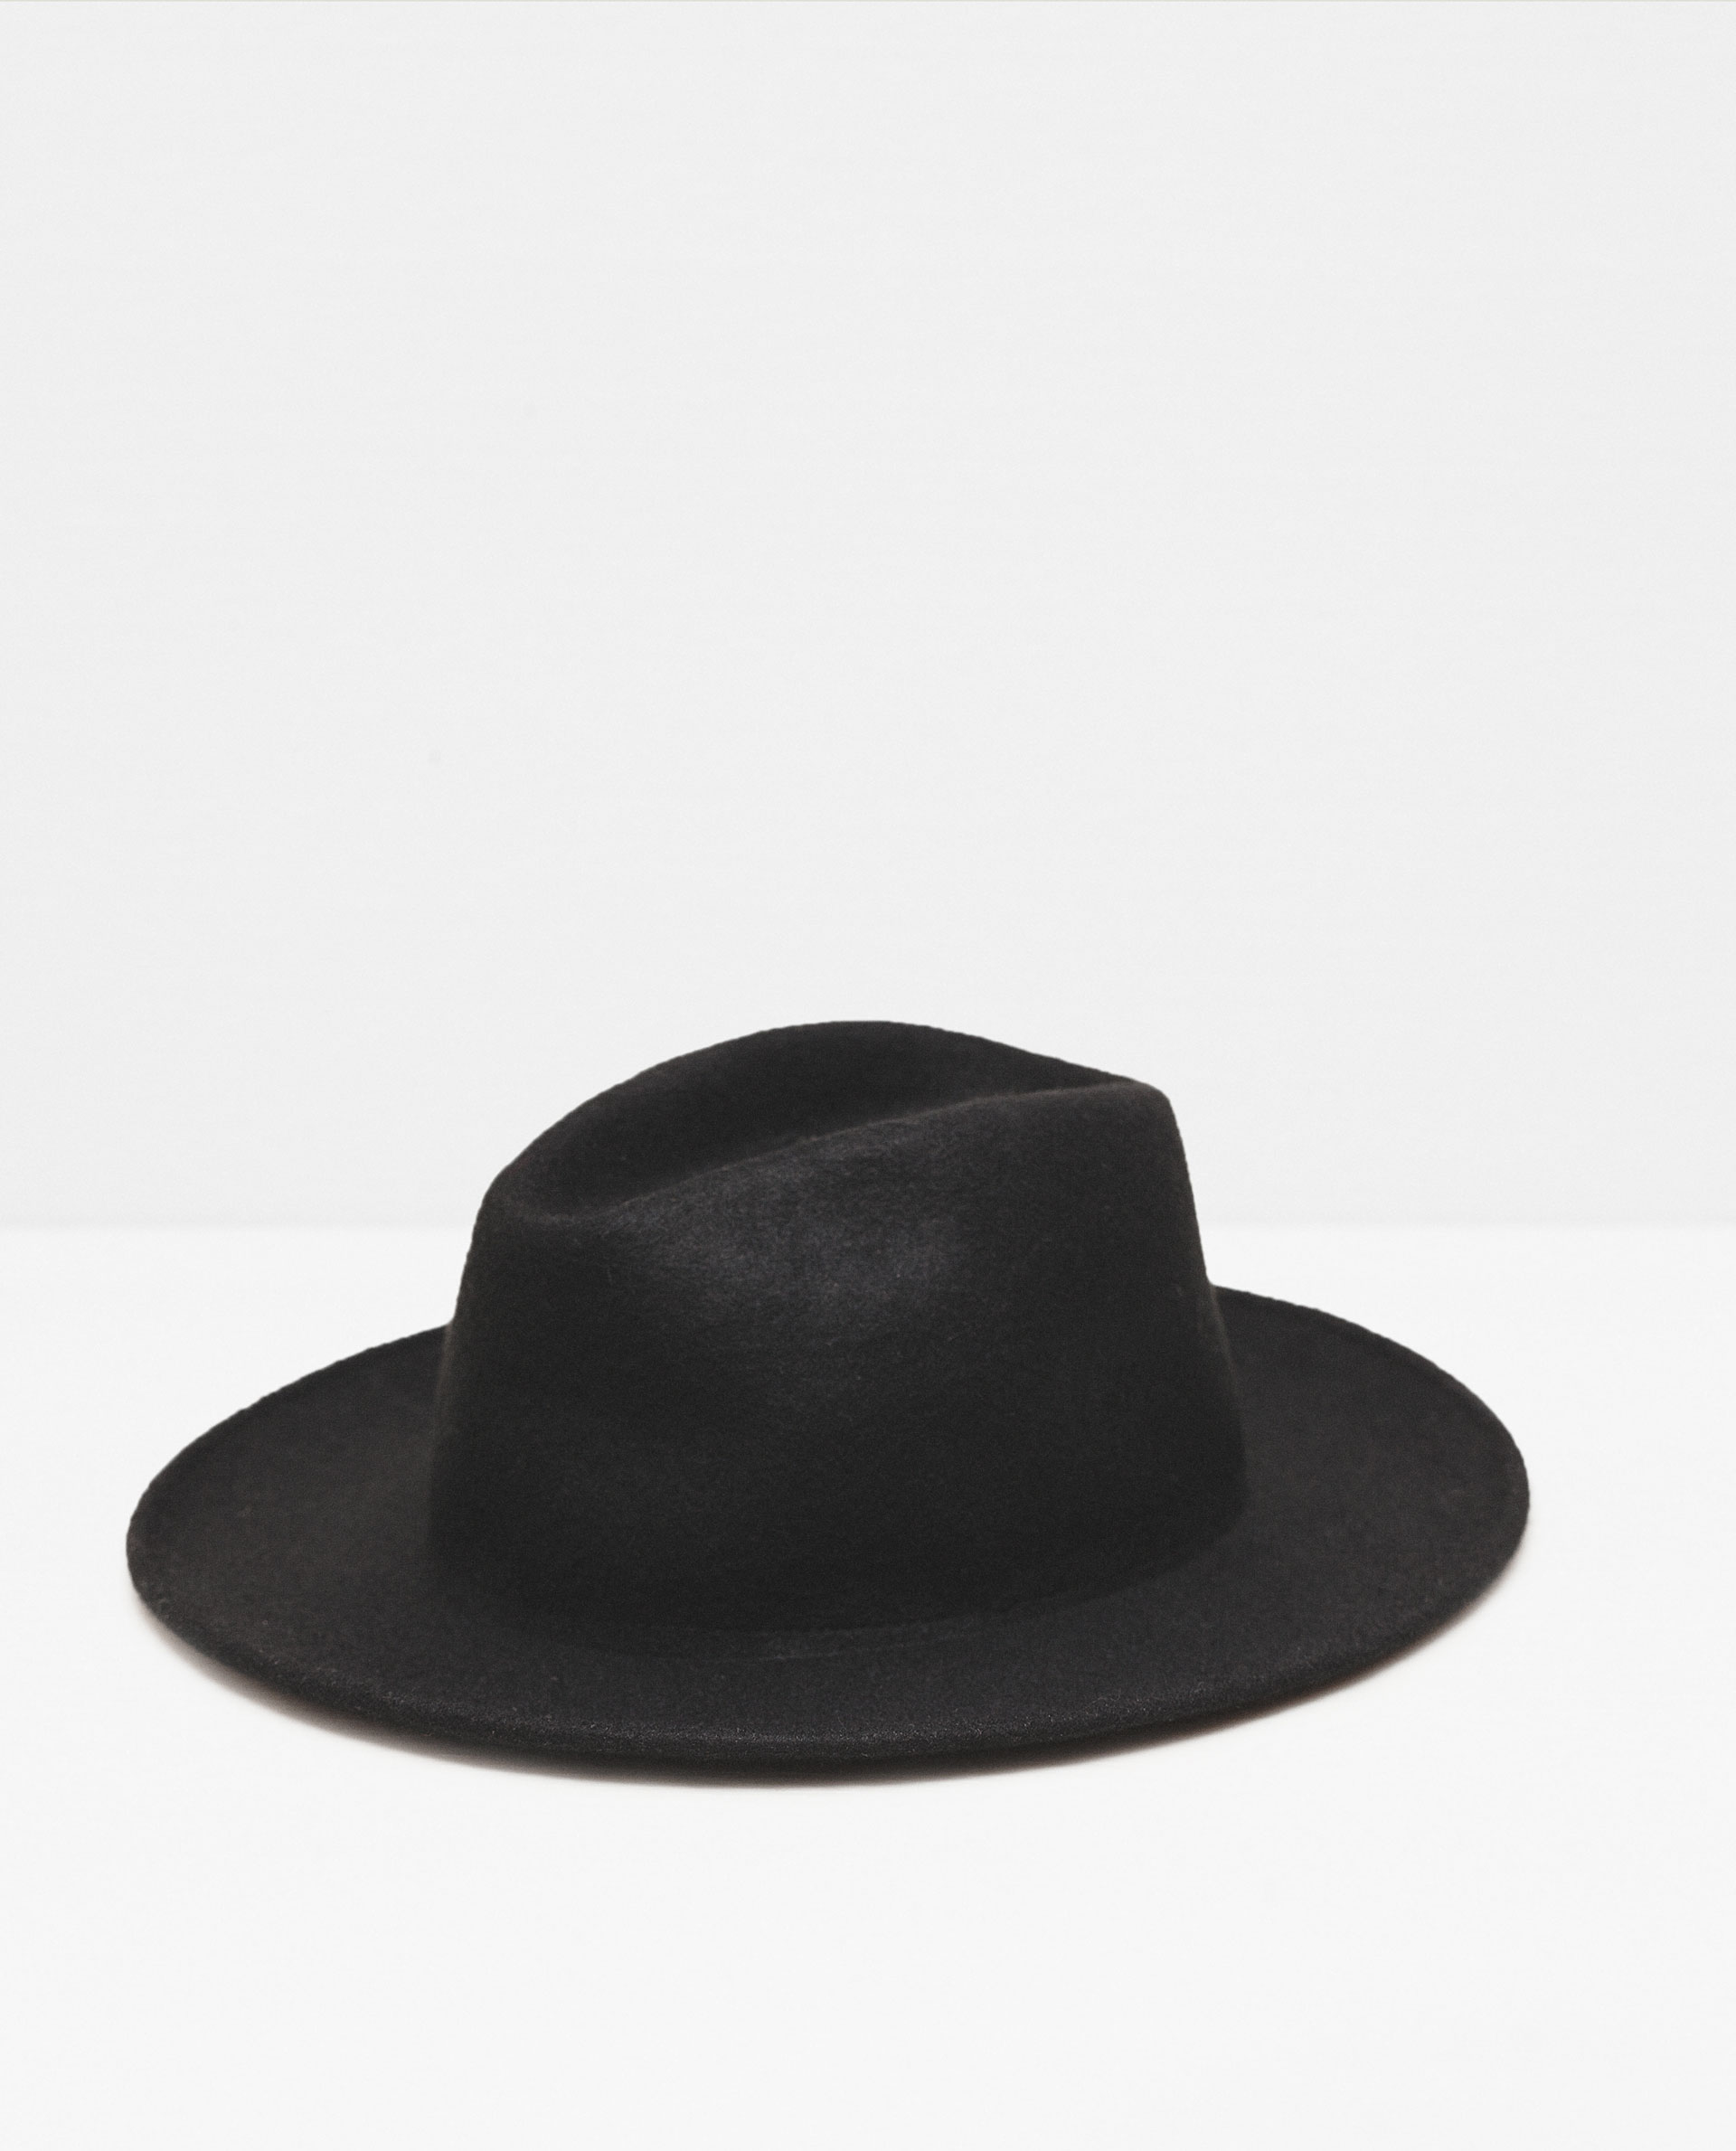 ZARA Men's Felt Hat